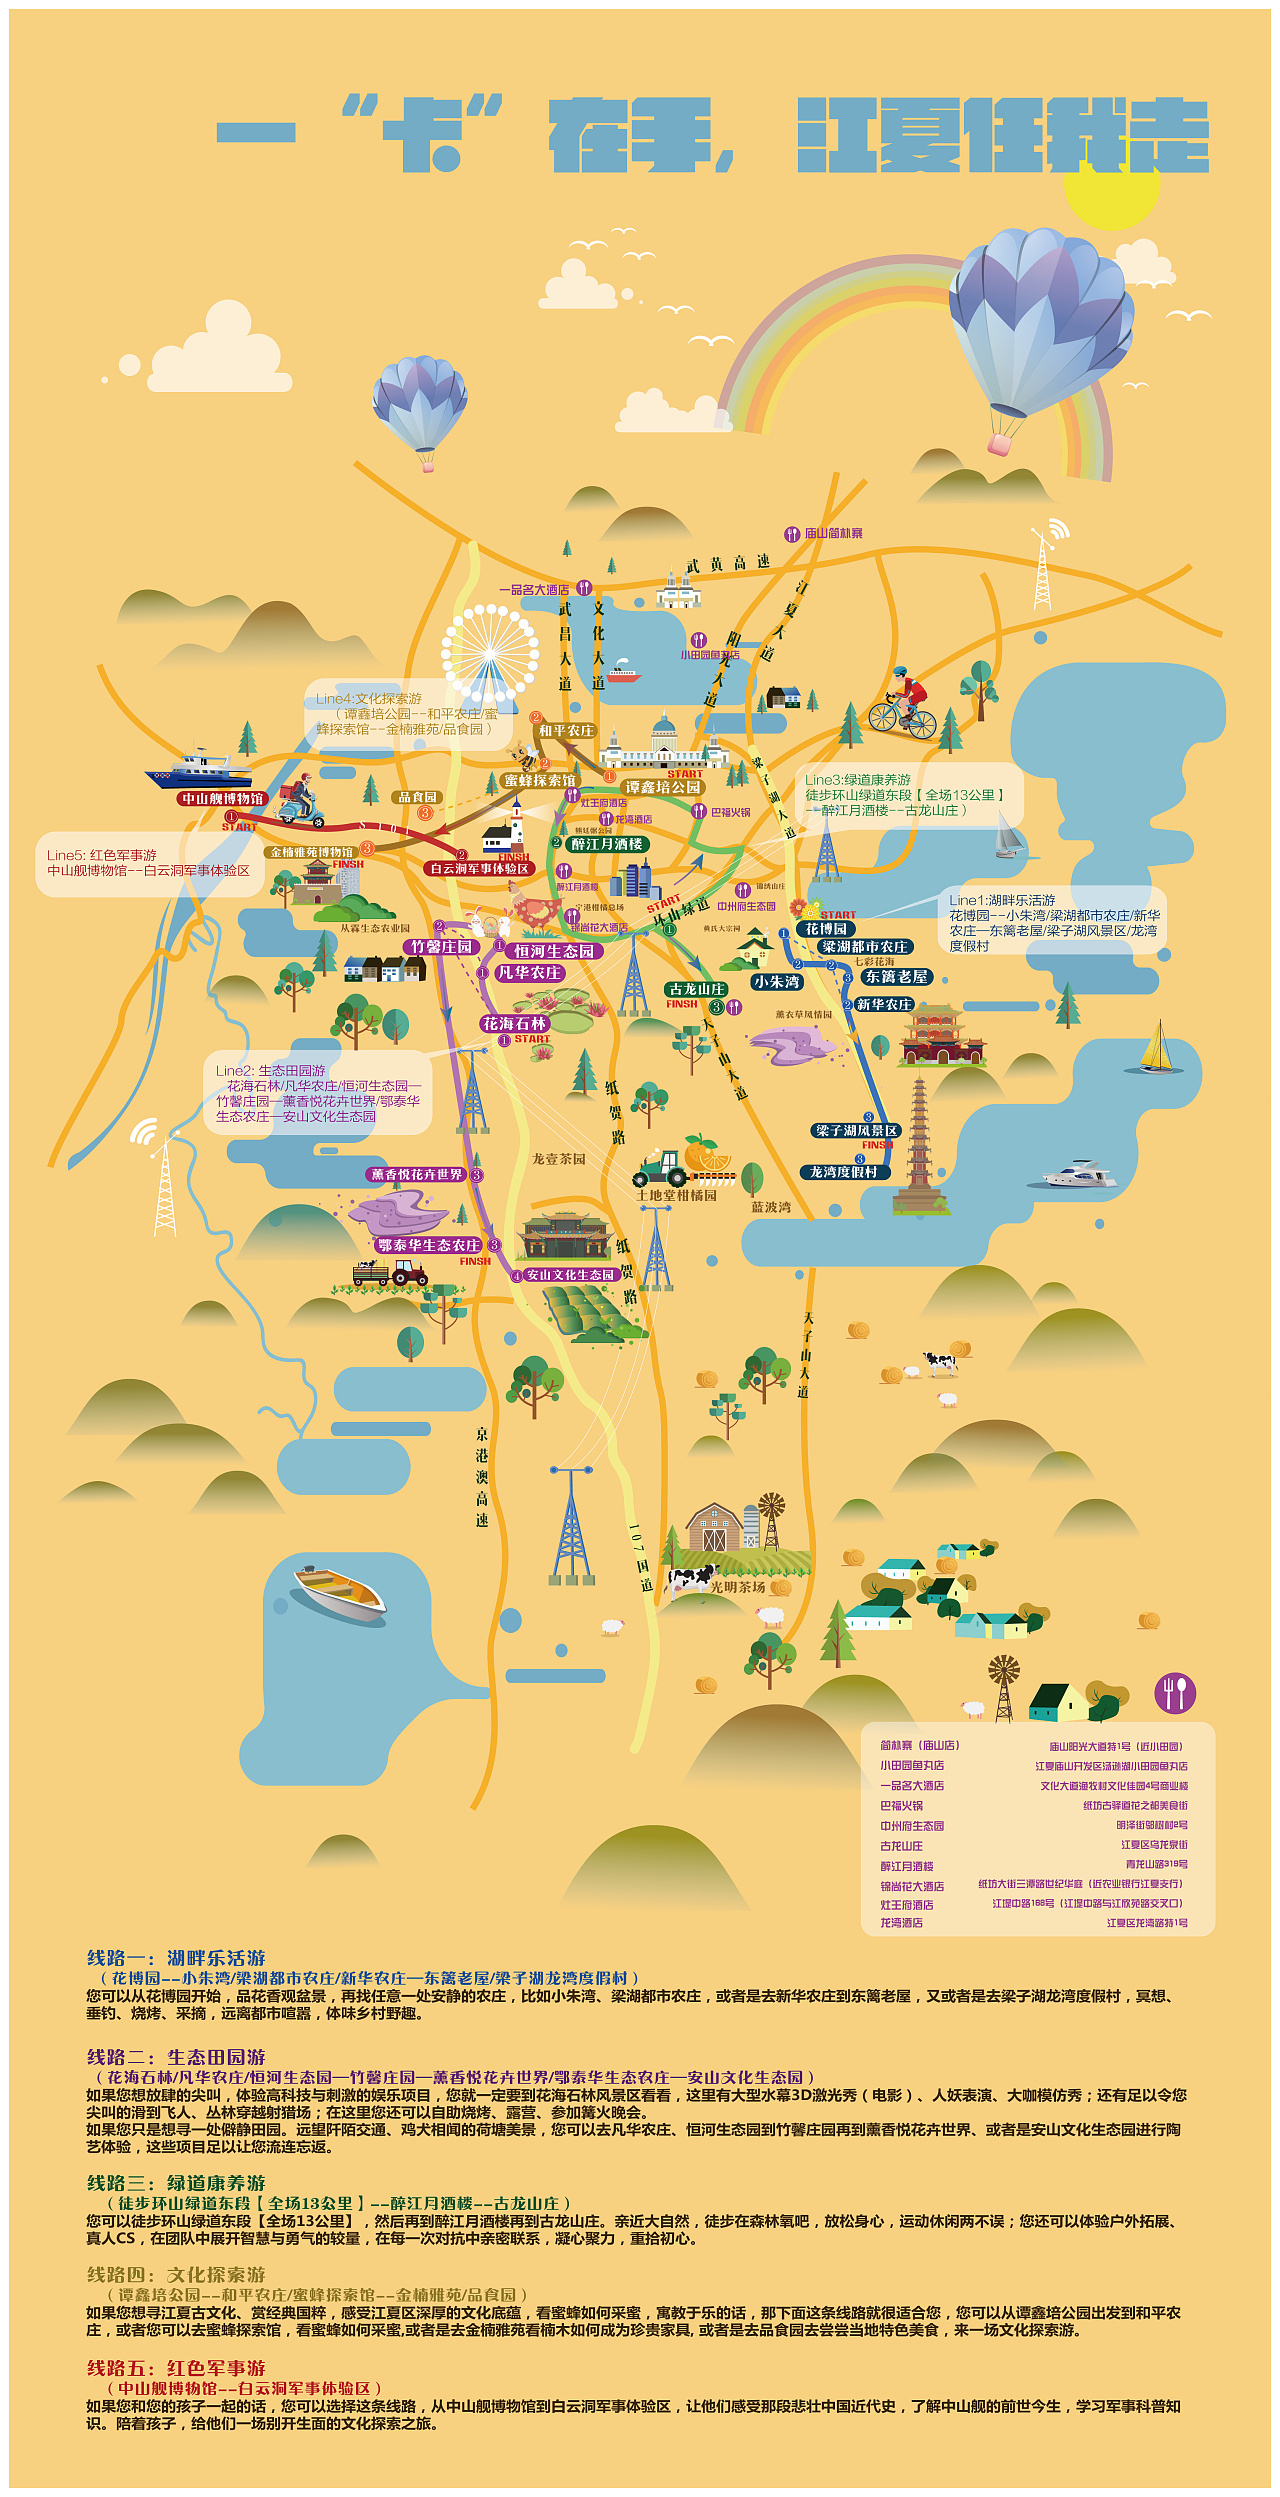 武汉电视台 江夏乡村旅游项目地图绘制(二)终稿